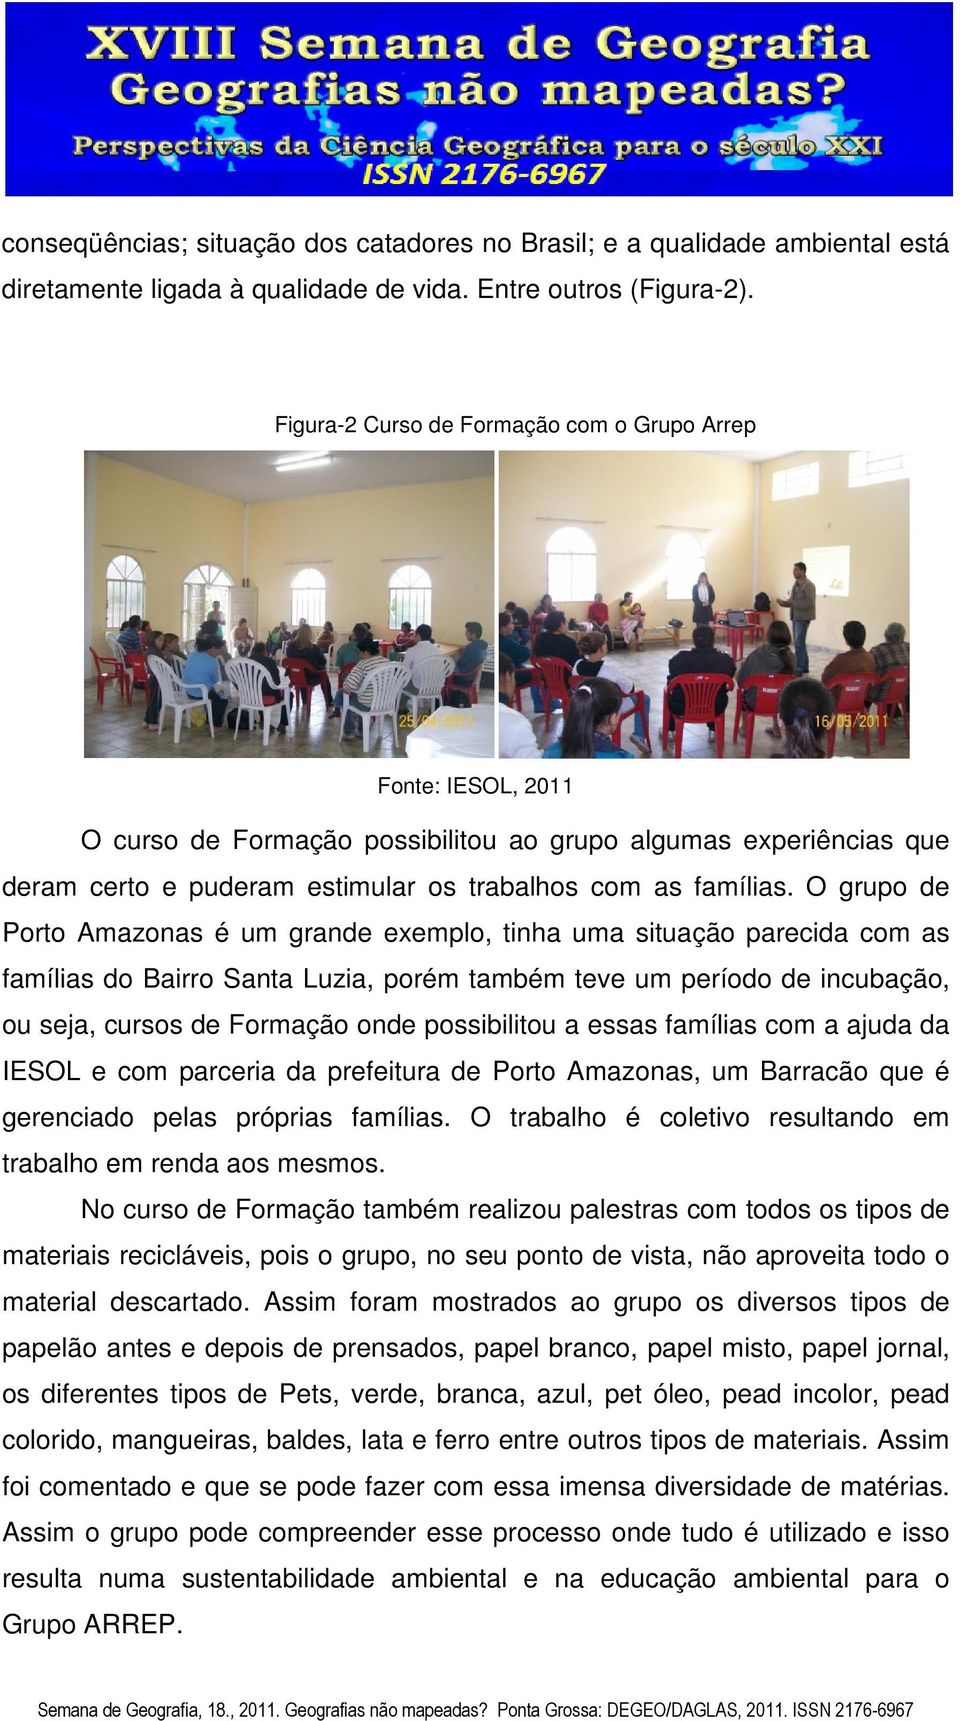 O grupo de Porto Amazonas é um grande exemplo, tinha uma situação parecida com as famílias do Bairro Santa Luzia, porém também teve um período de incubação, ou seja, cursos de Formação onde